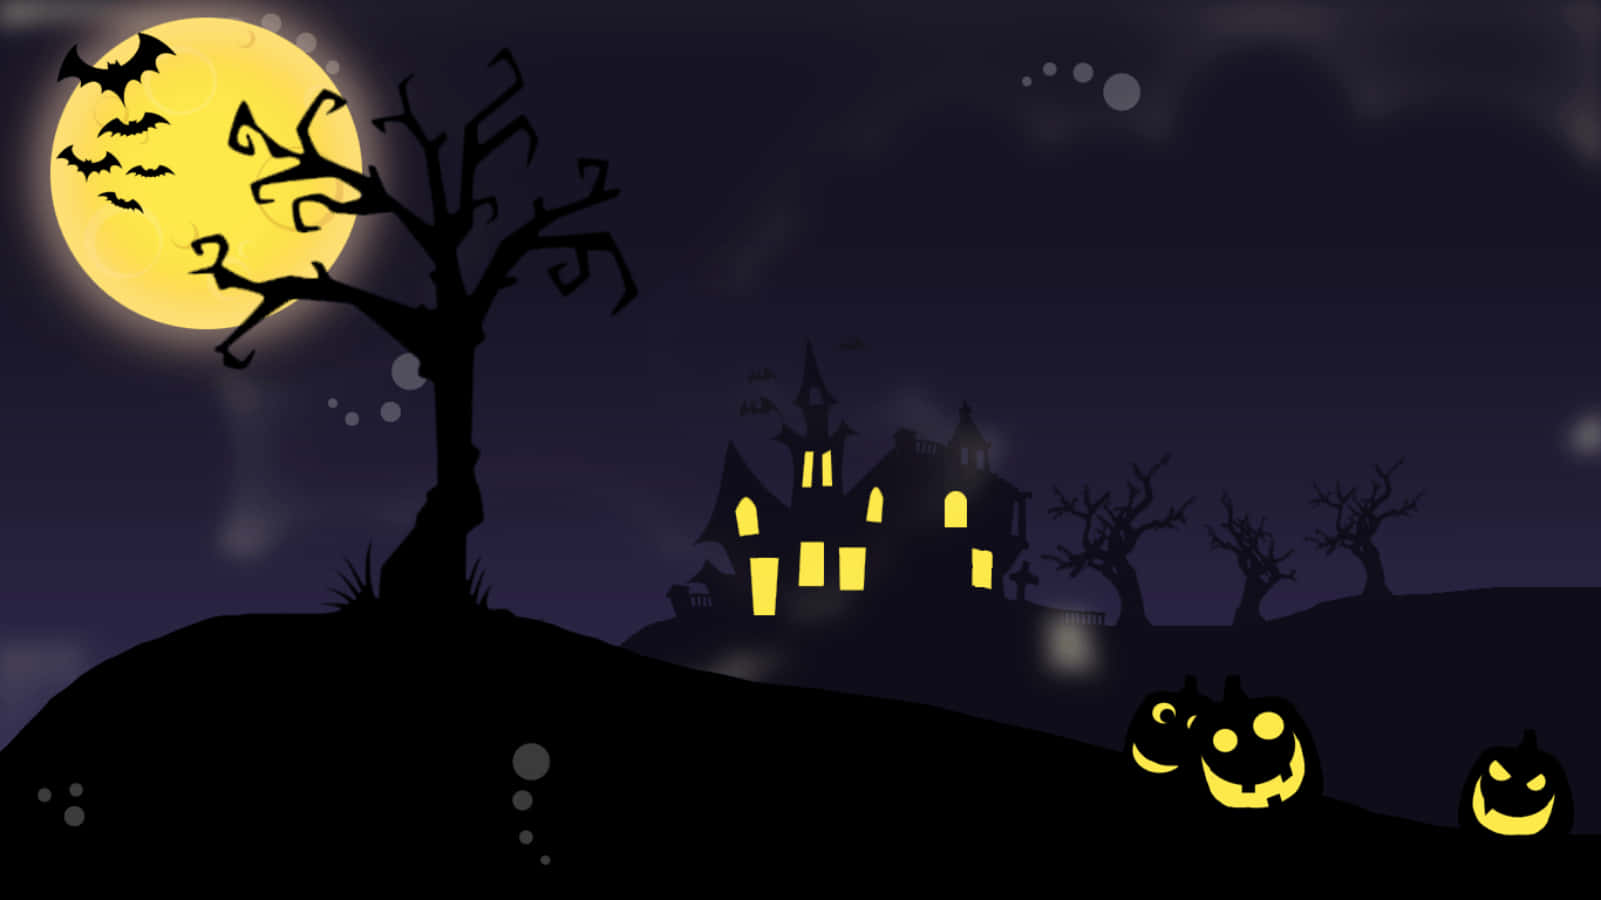 Imagende Una Casa Embrujada De Halloween Con Dibujos Animados En Negro Y Amarillo.